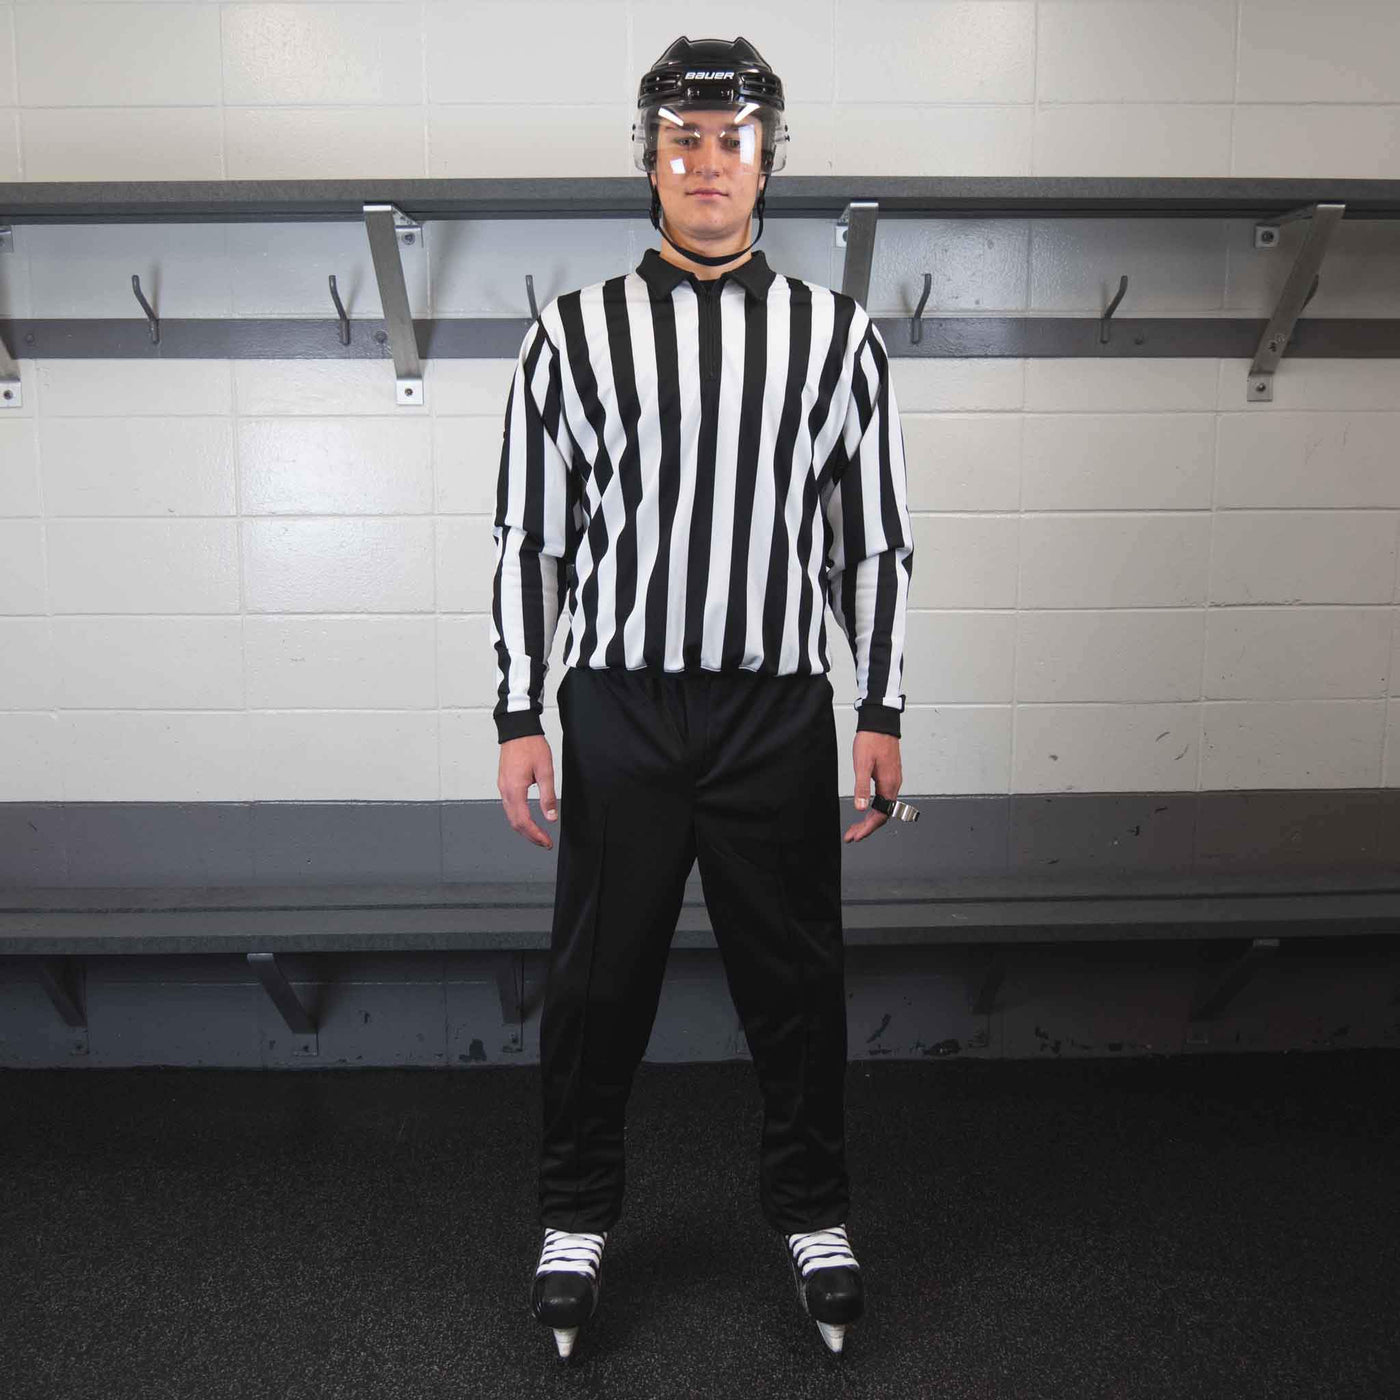 Zebrasclub ZC4 beginner hockey referee kit on model